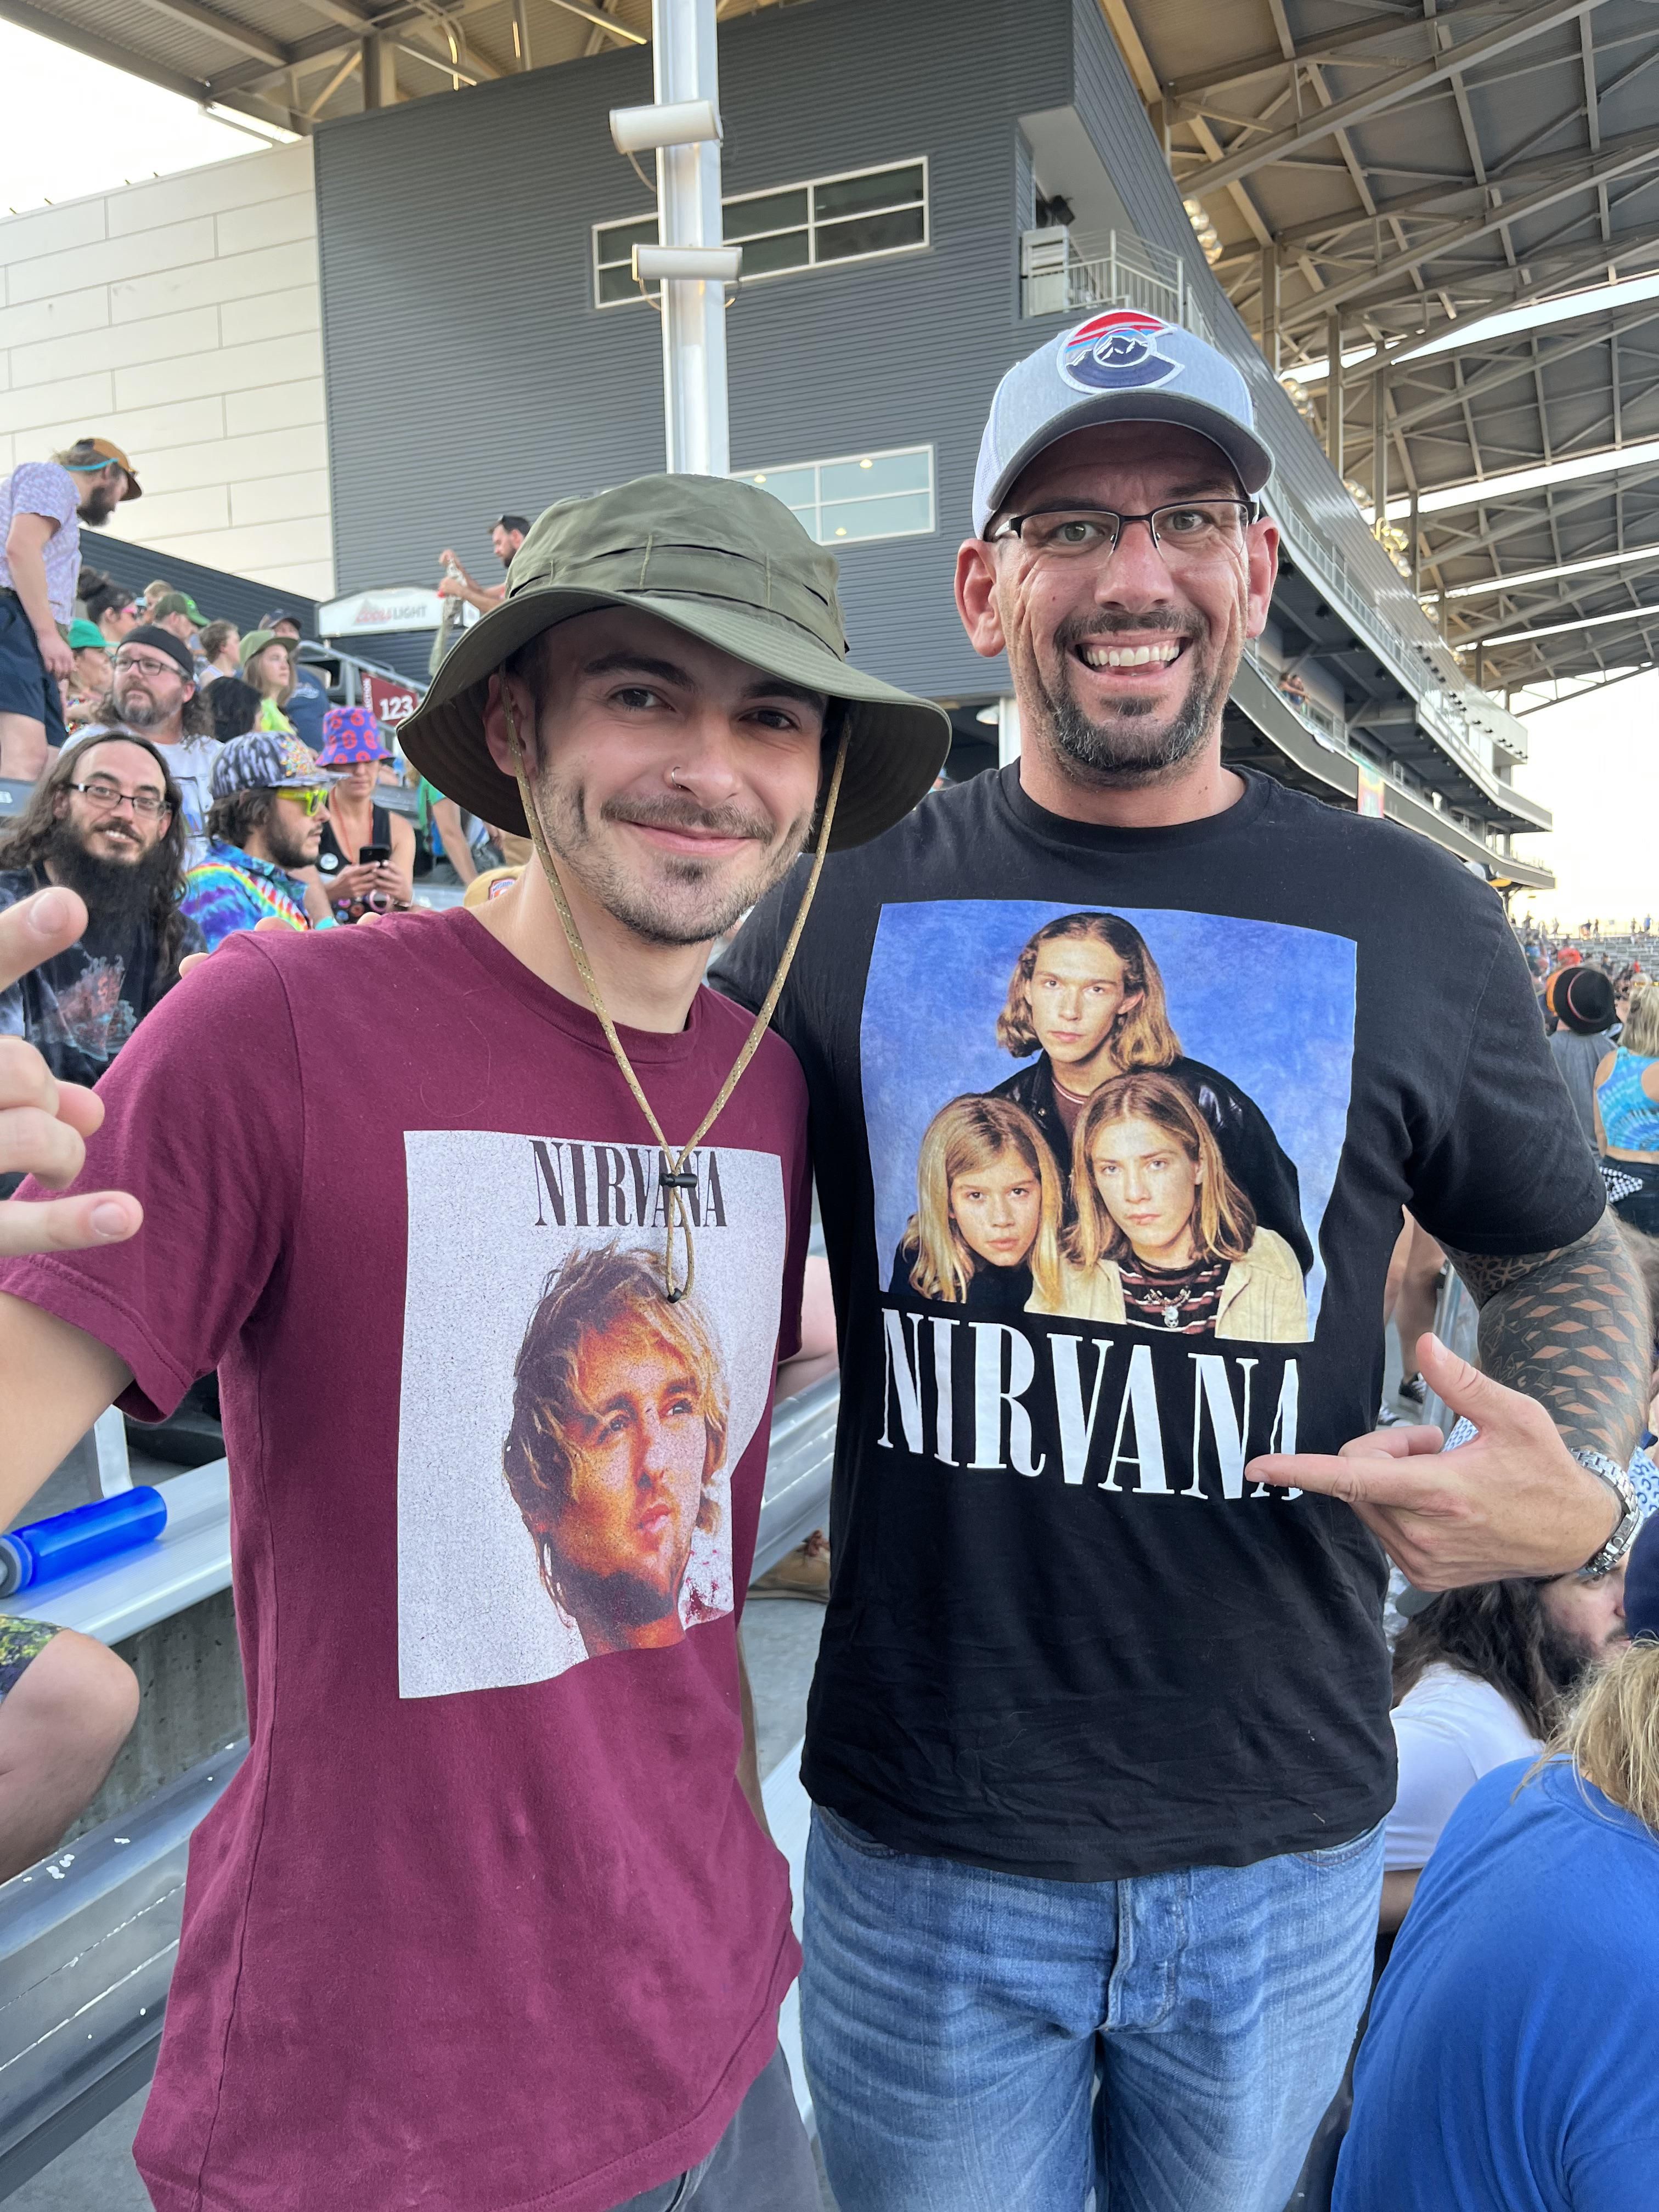 Met a fellow Nirvana fan last night.